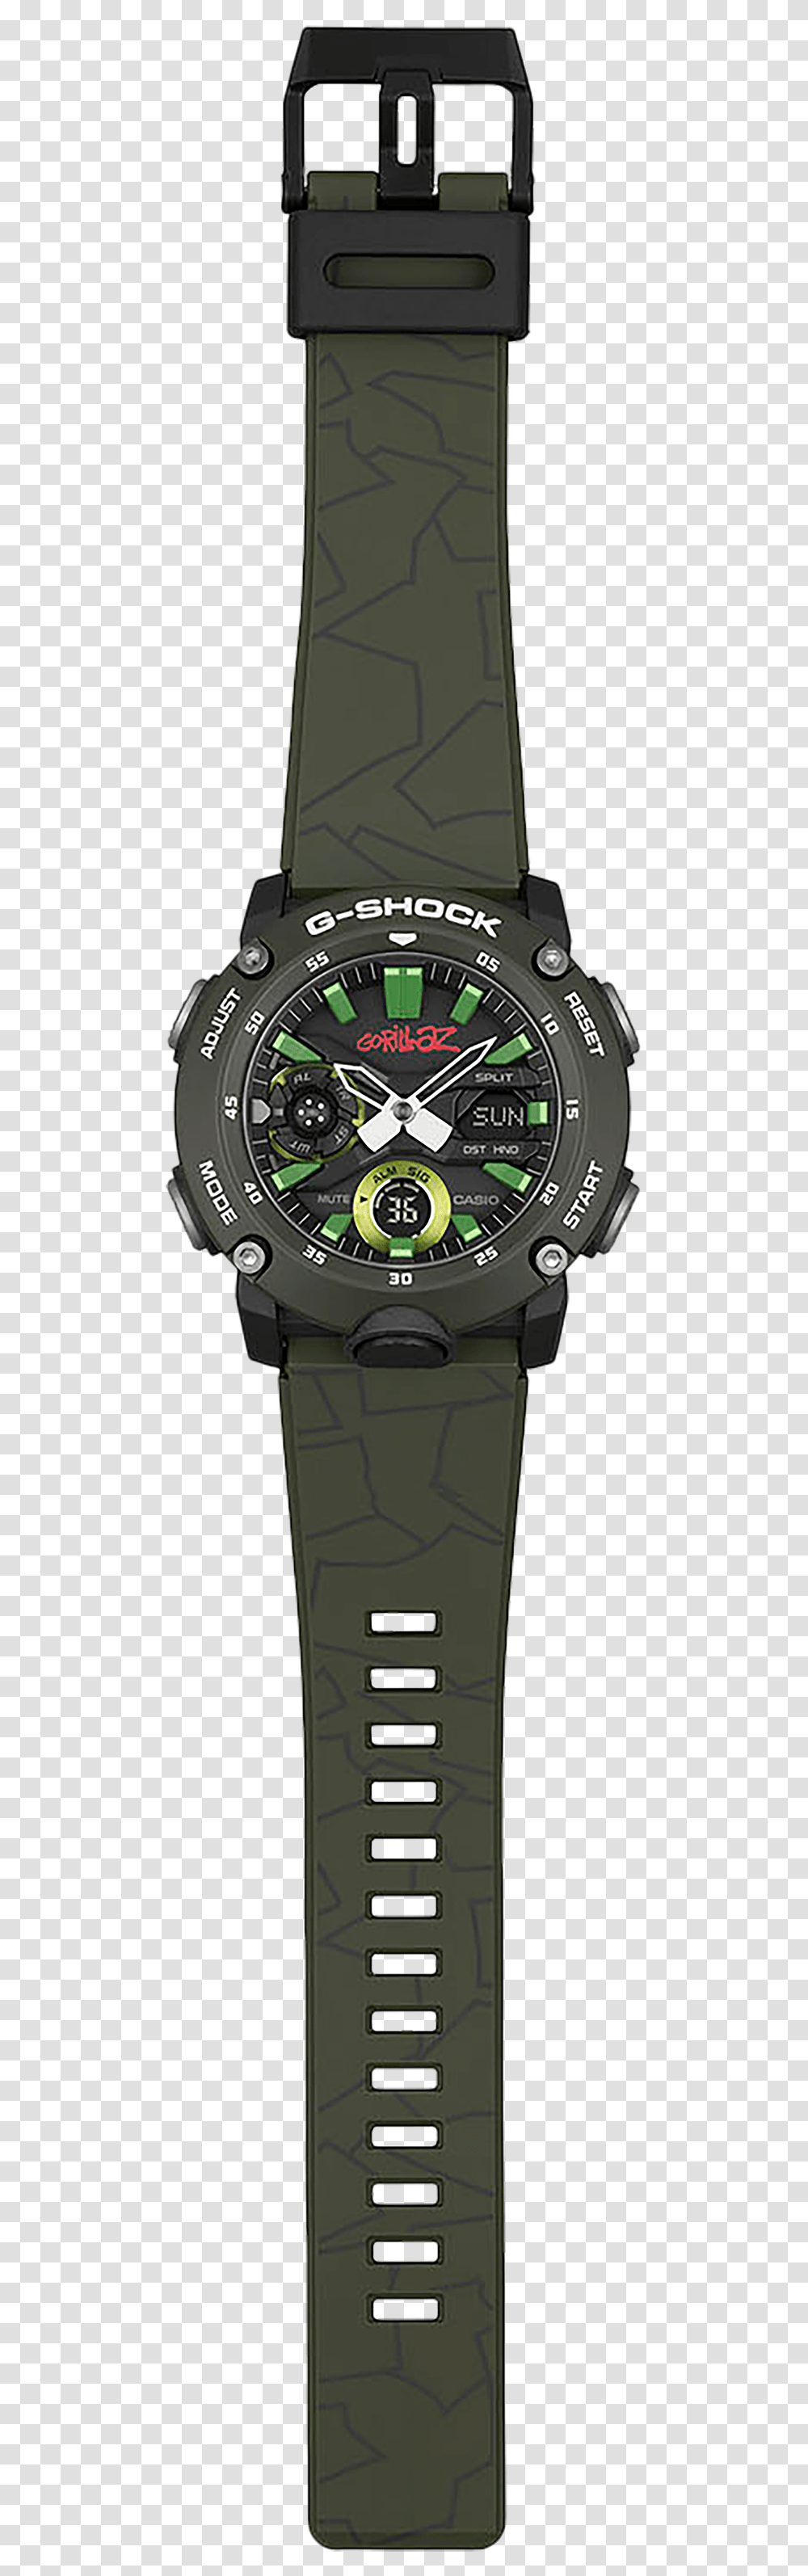 3a G Shock X Gorillaz 2019, Wristwatch, Digital Watch Transparent Png